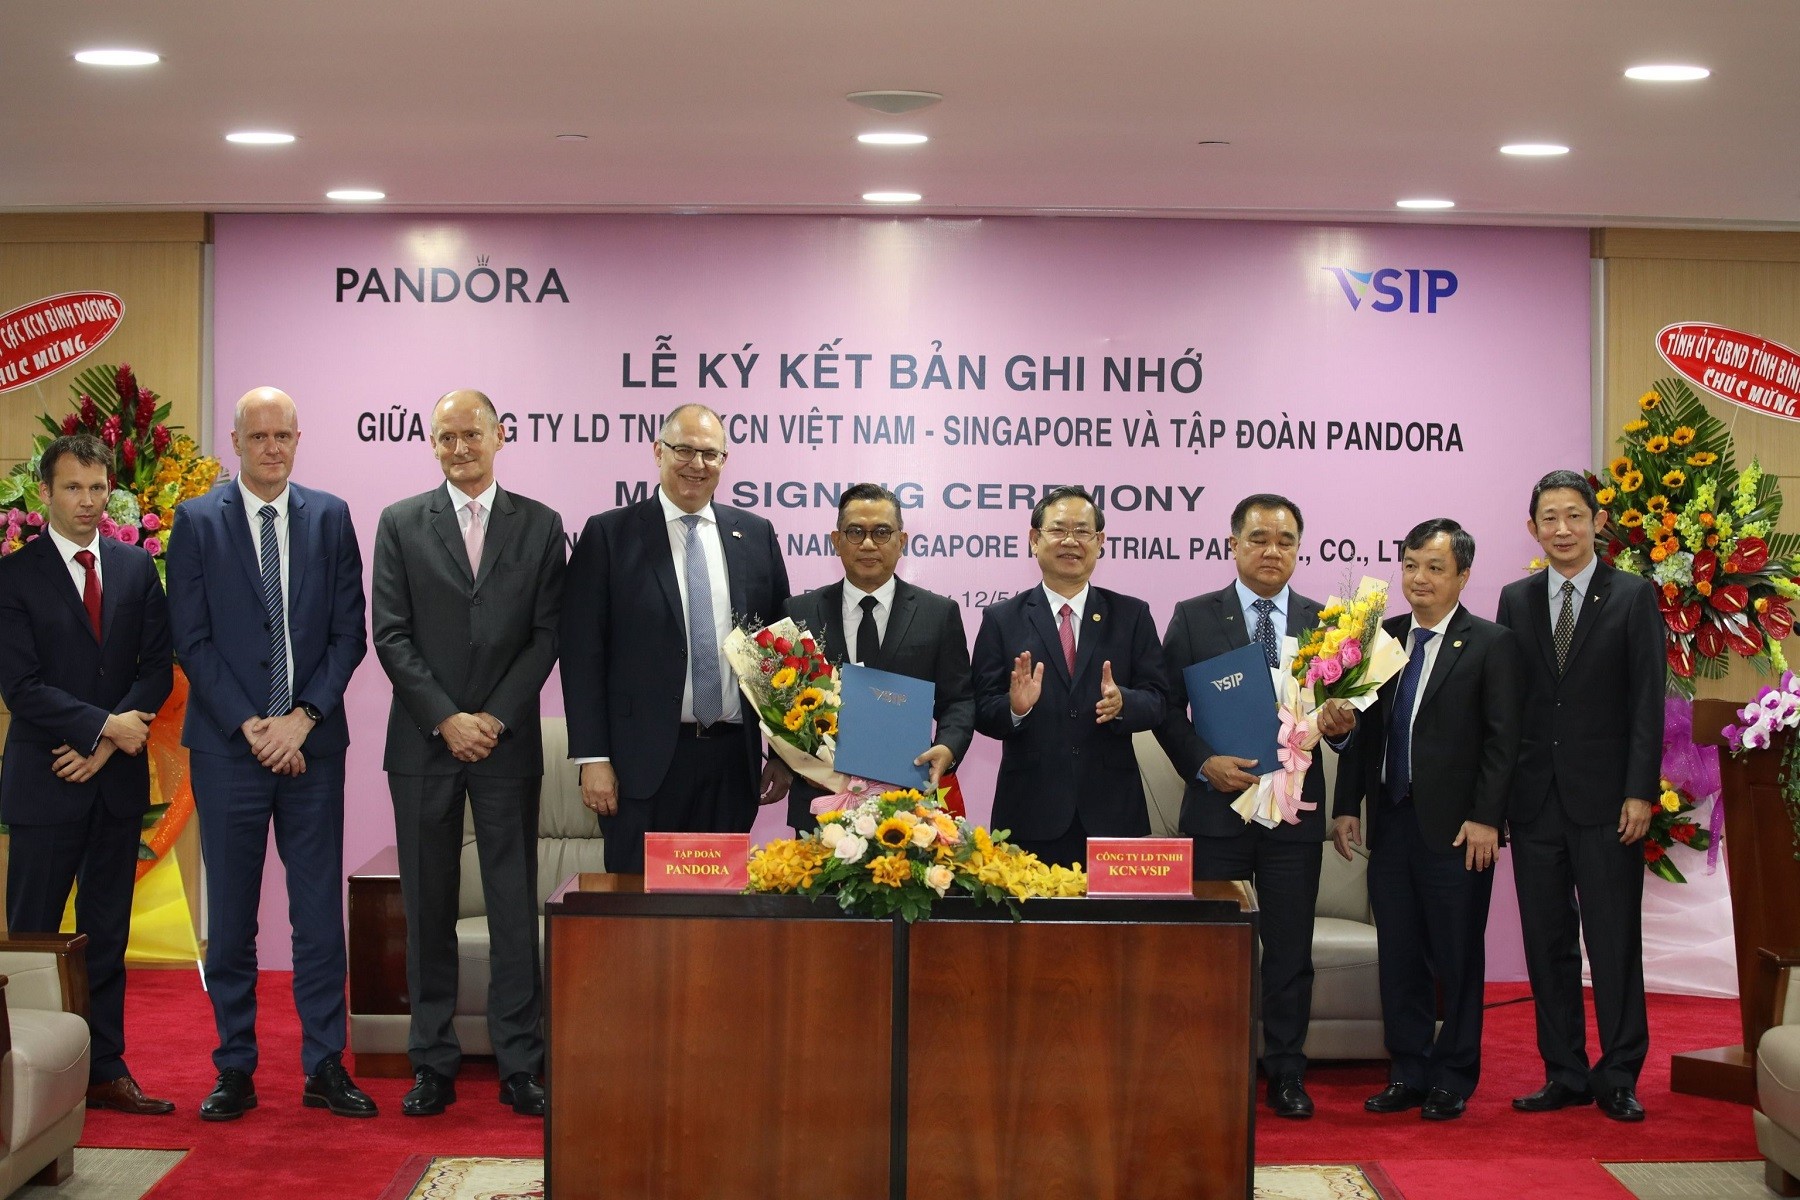 

Pandora là thương hiệu trang sức đến từ Đan Mạch mới đây đã ký thỏa thuận xây dựng cơ sở chế tác trang sức mới tại Khu công nghiệp Việt Nam - Singapore 3 (VSIP) tỉnh Bình Dương
